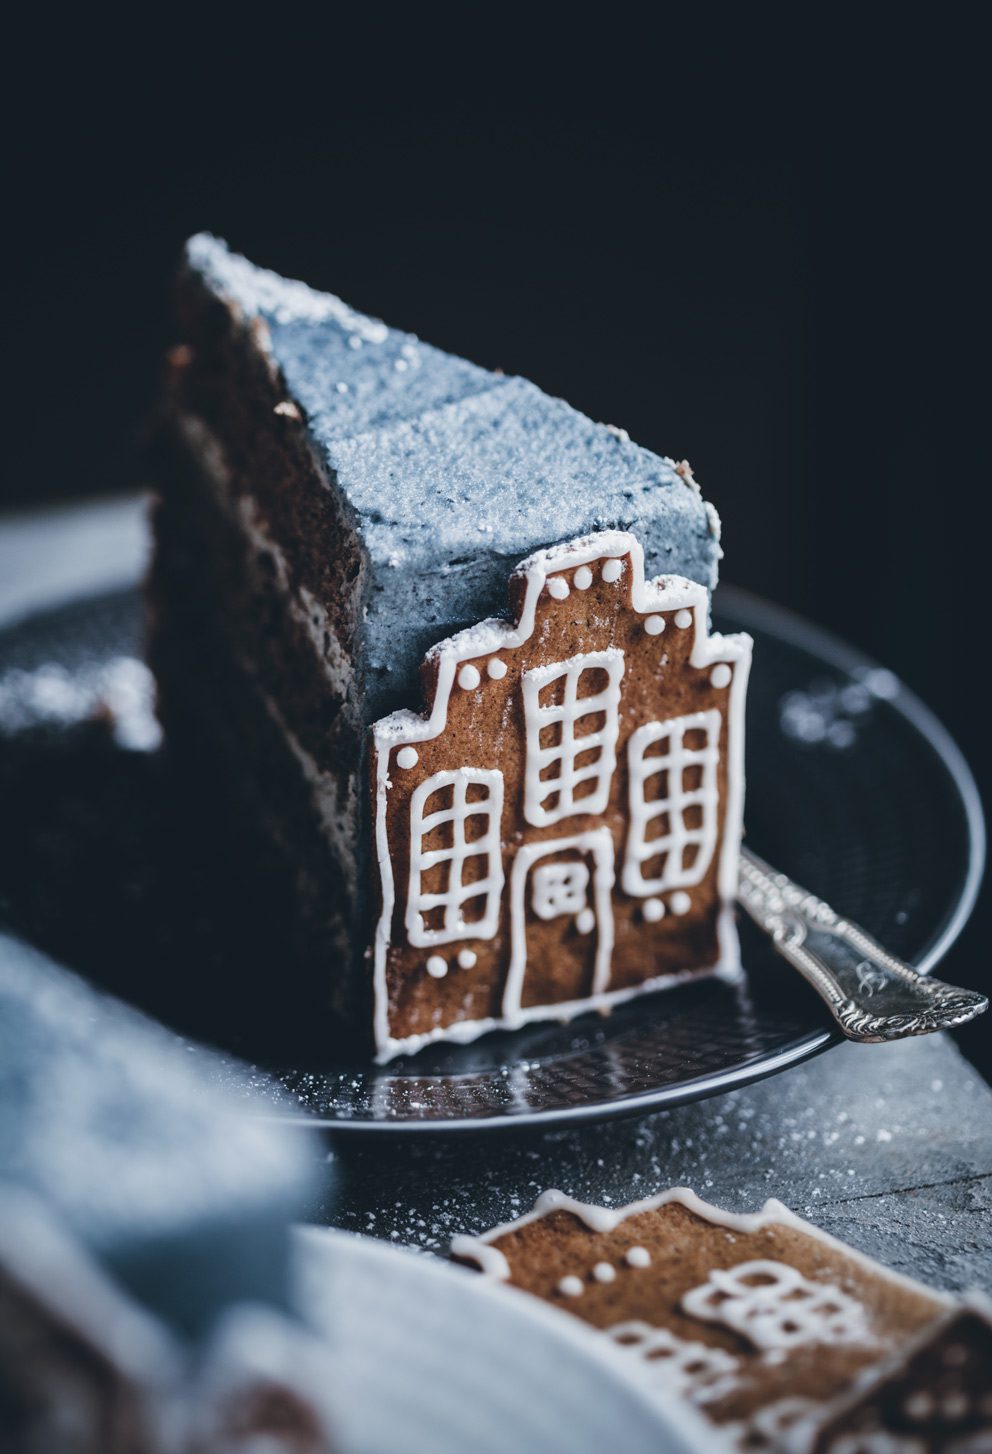 volang lovely life linda lomelino pepparkakshus kaka Finast i veckan; DIY adventsstjärnor, ett pepparkakshus och en blogg att följa